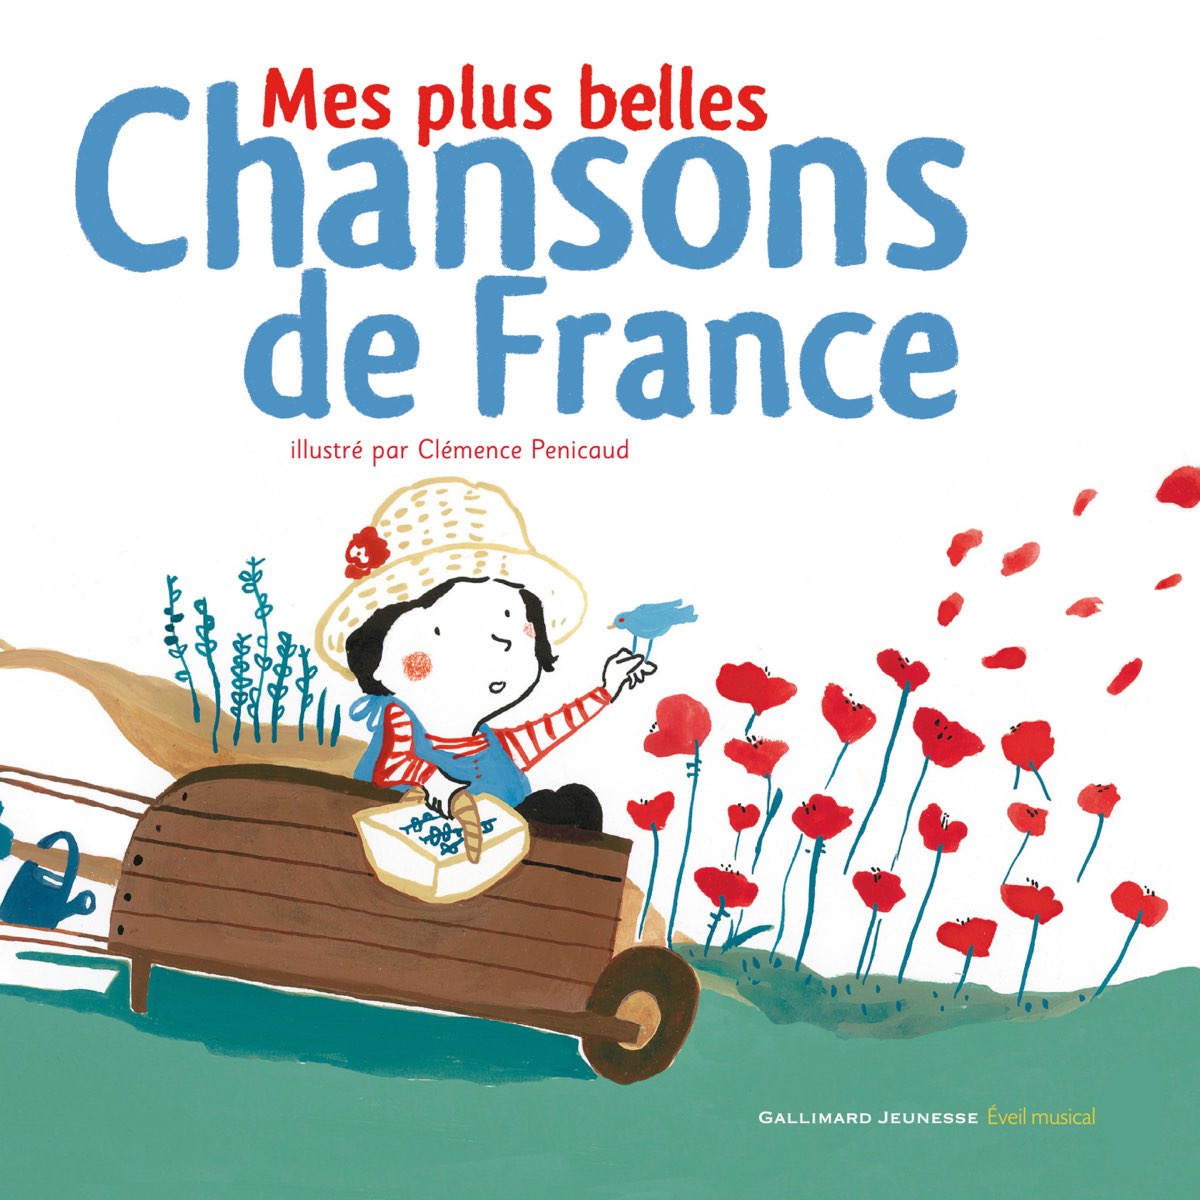 Mes plus belles chansons de France - Album by Les P'tites Voix - Apple Music